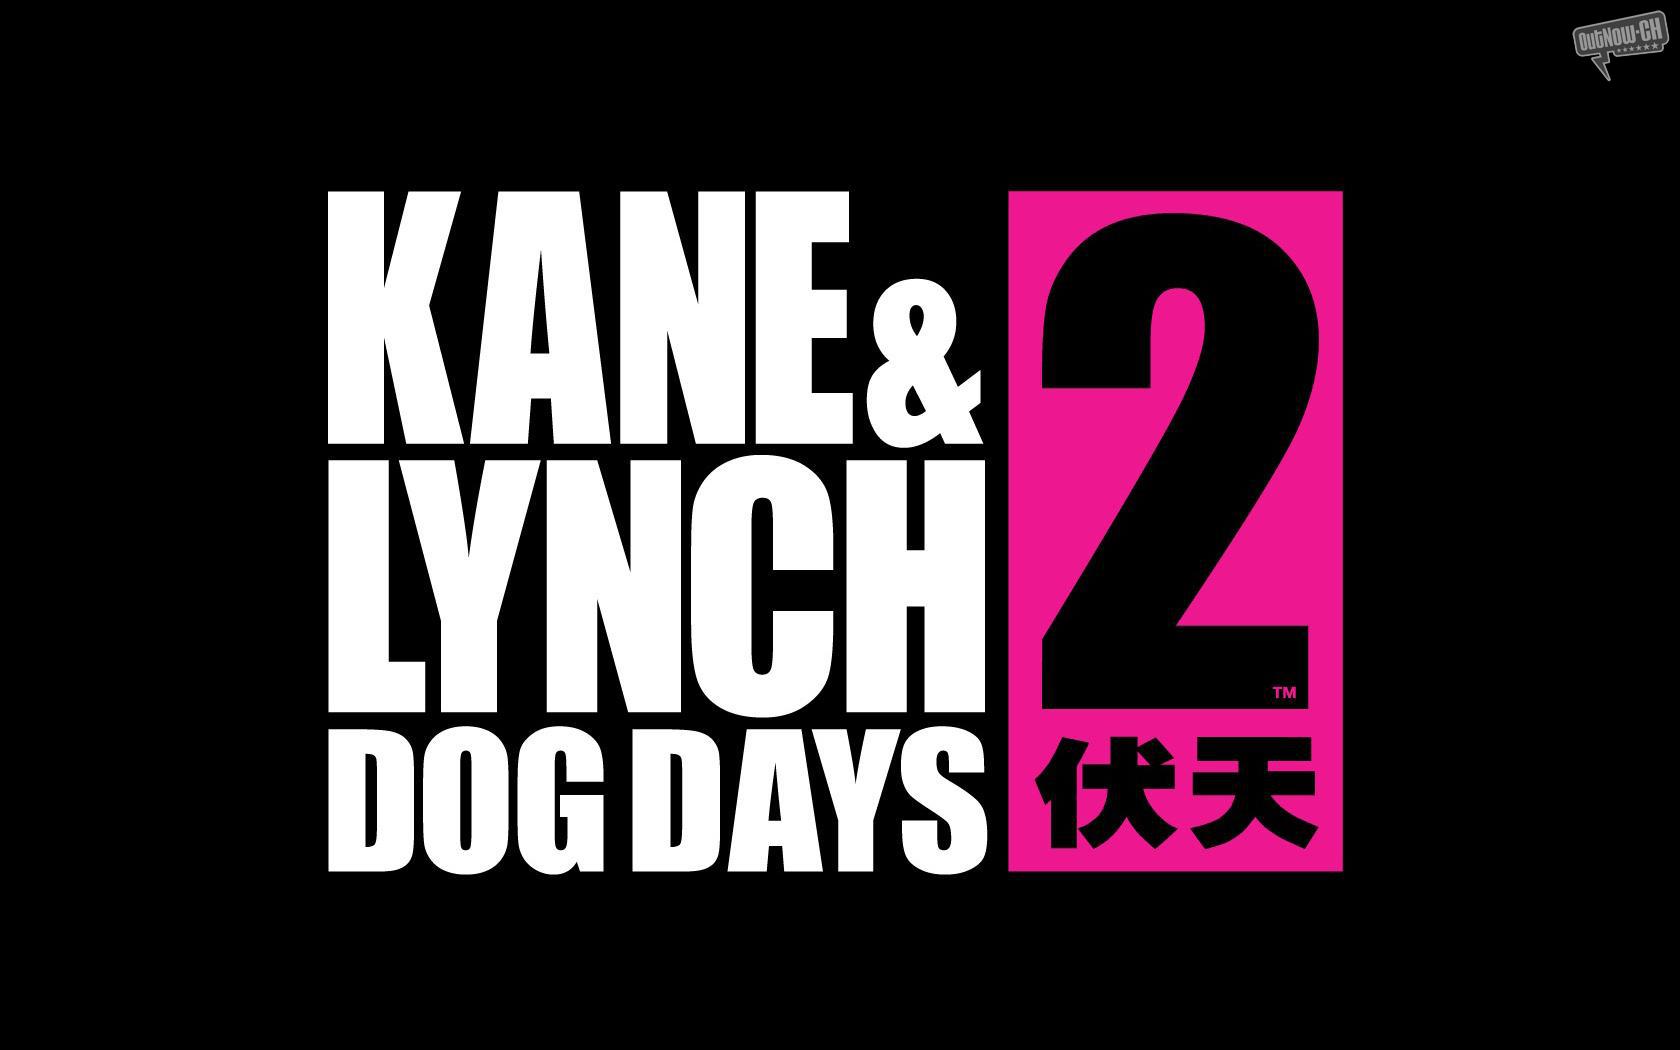 Kane lynch dog days steam фото 47